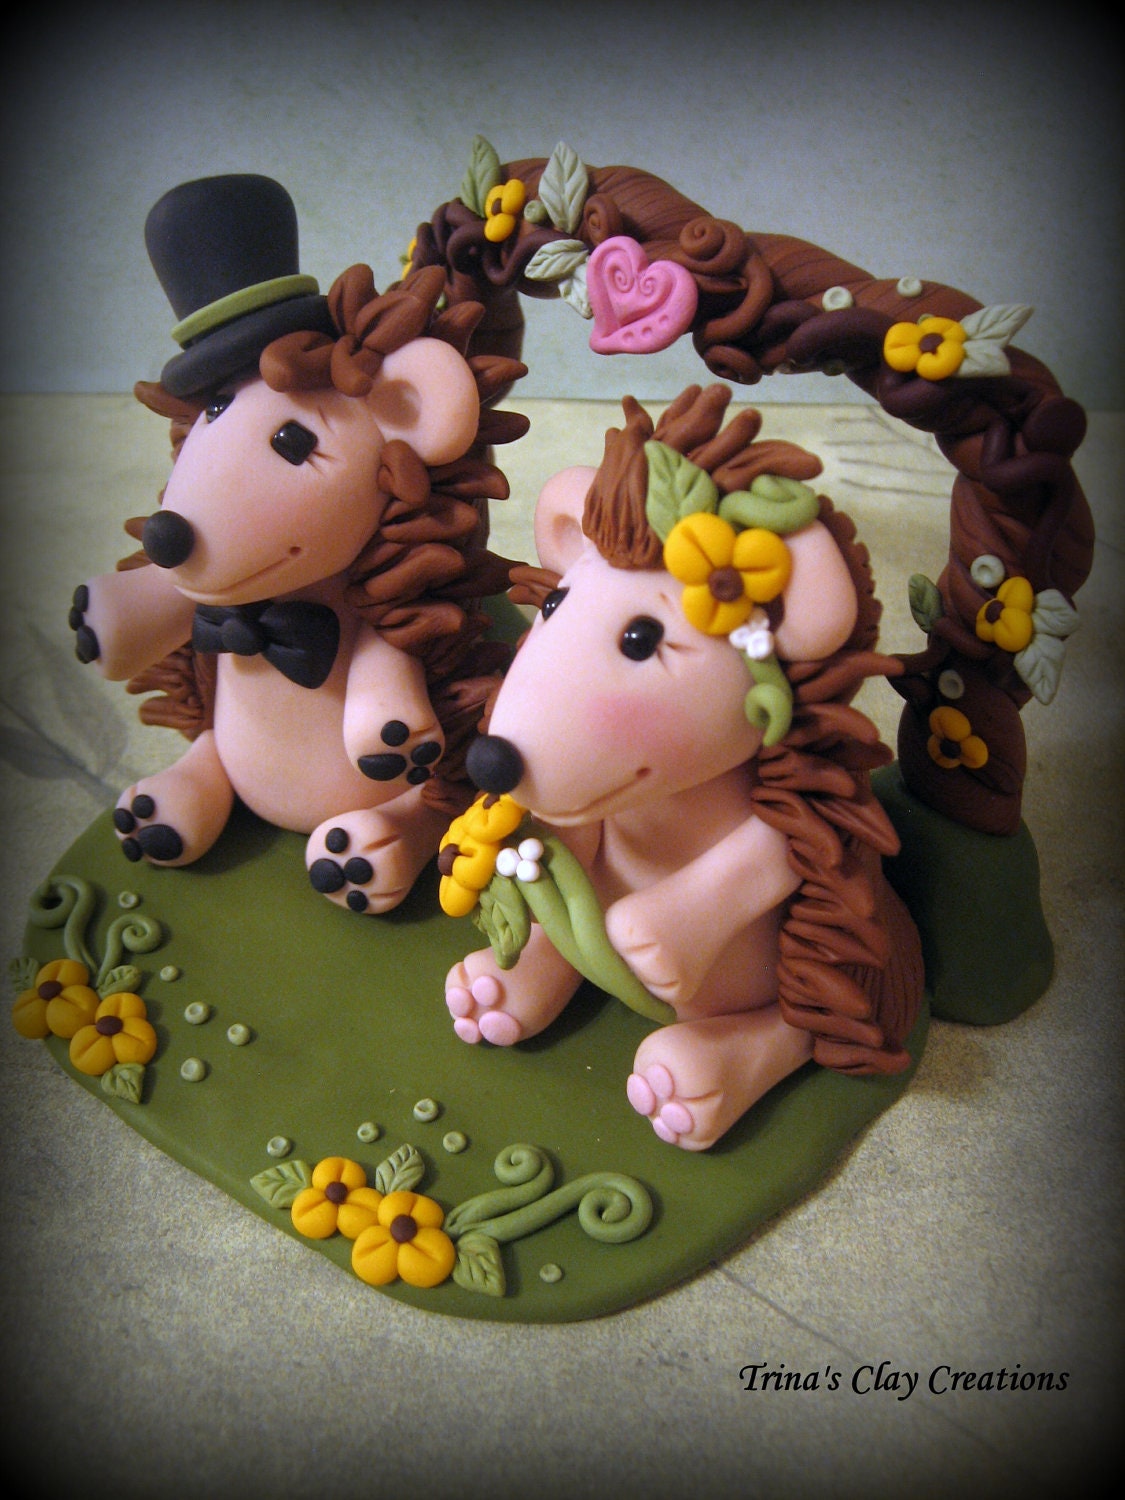 Wedding Cake Topper, Custom Cake Topper, Hedgehog with Flowers, Hedgehog Wedding Topper